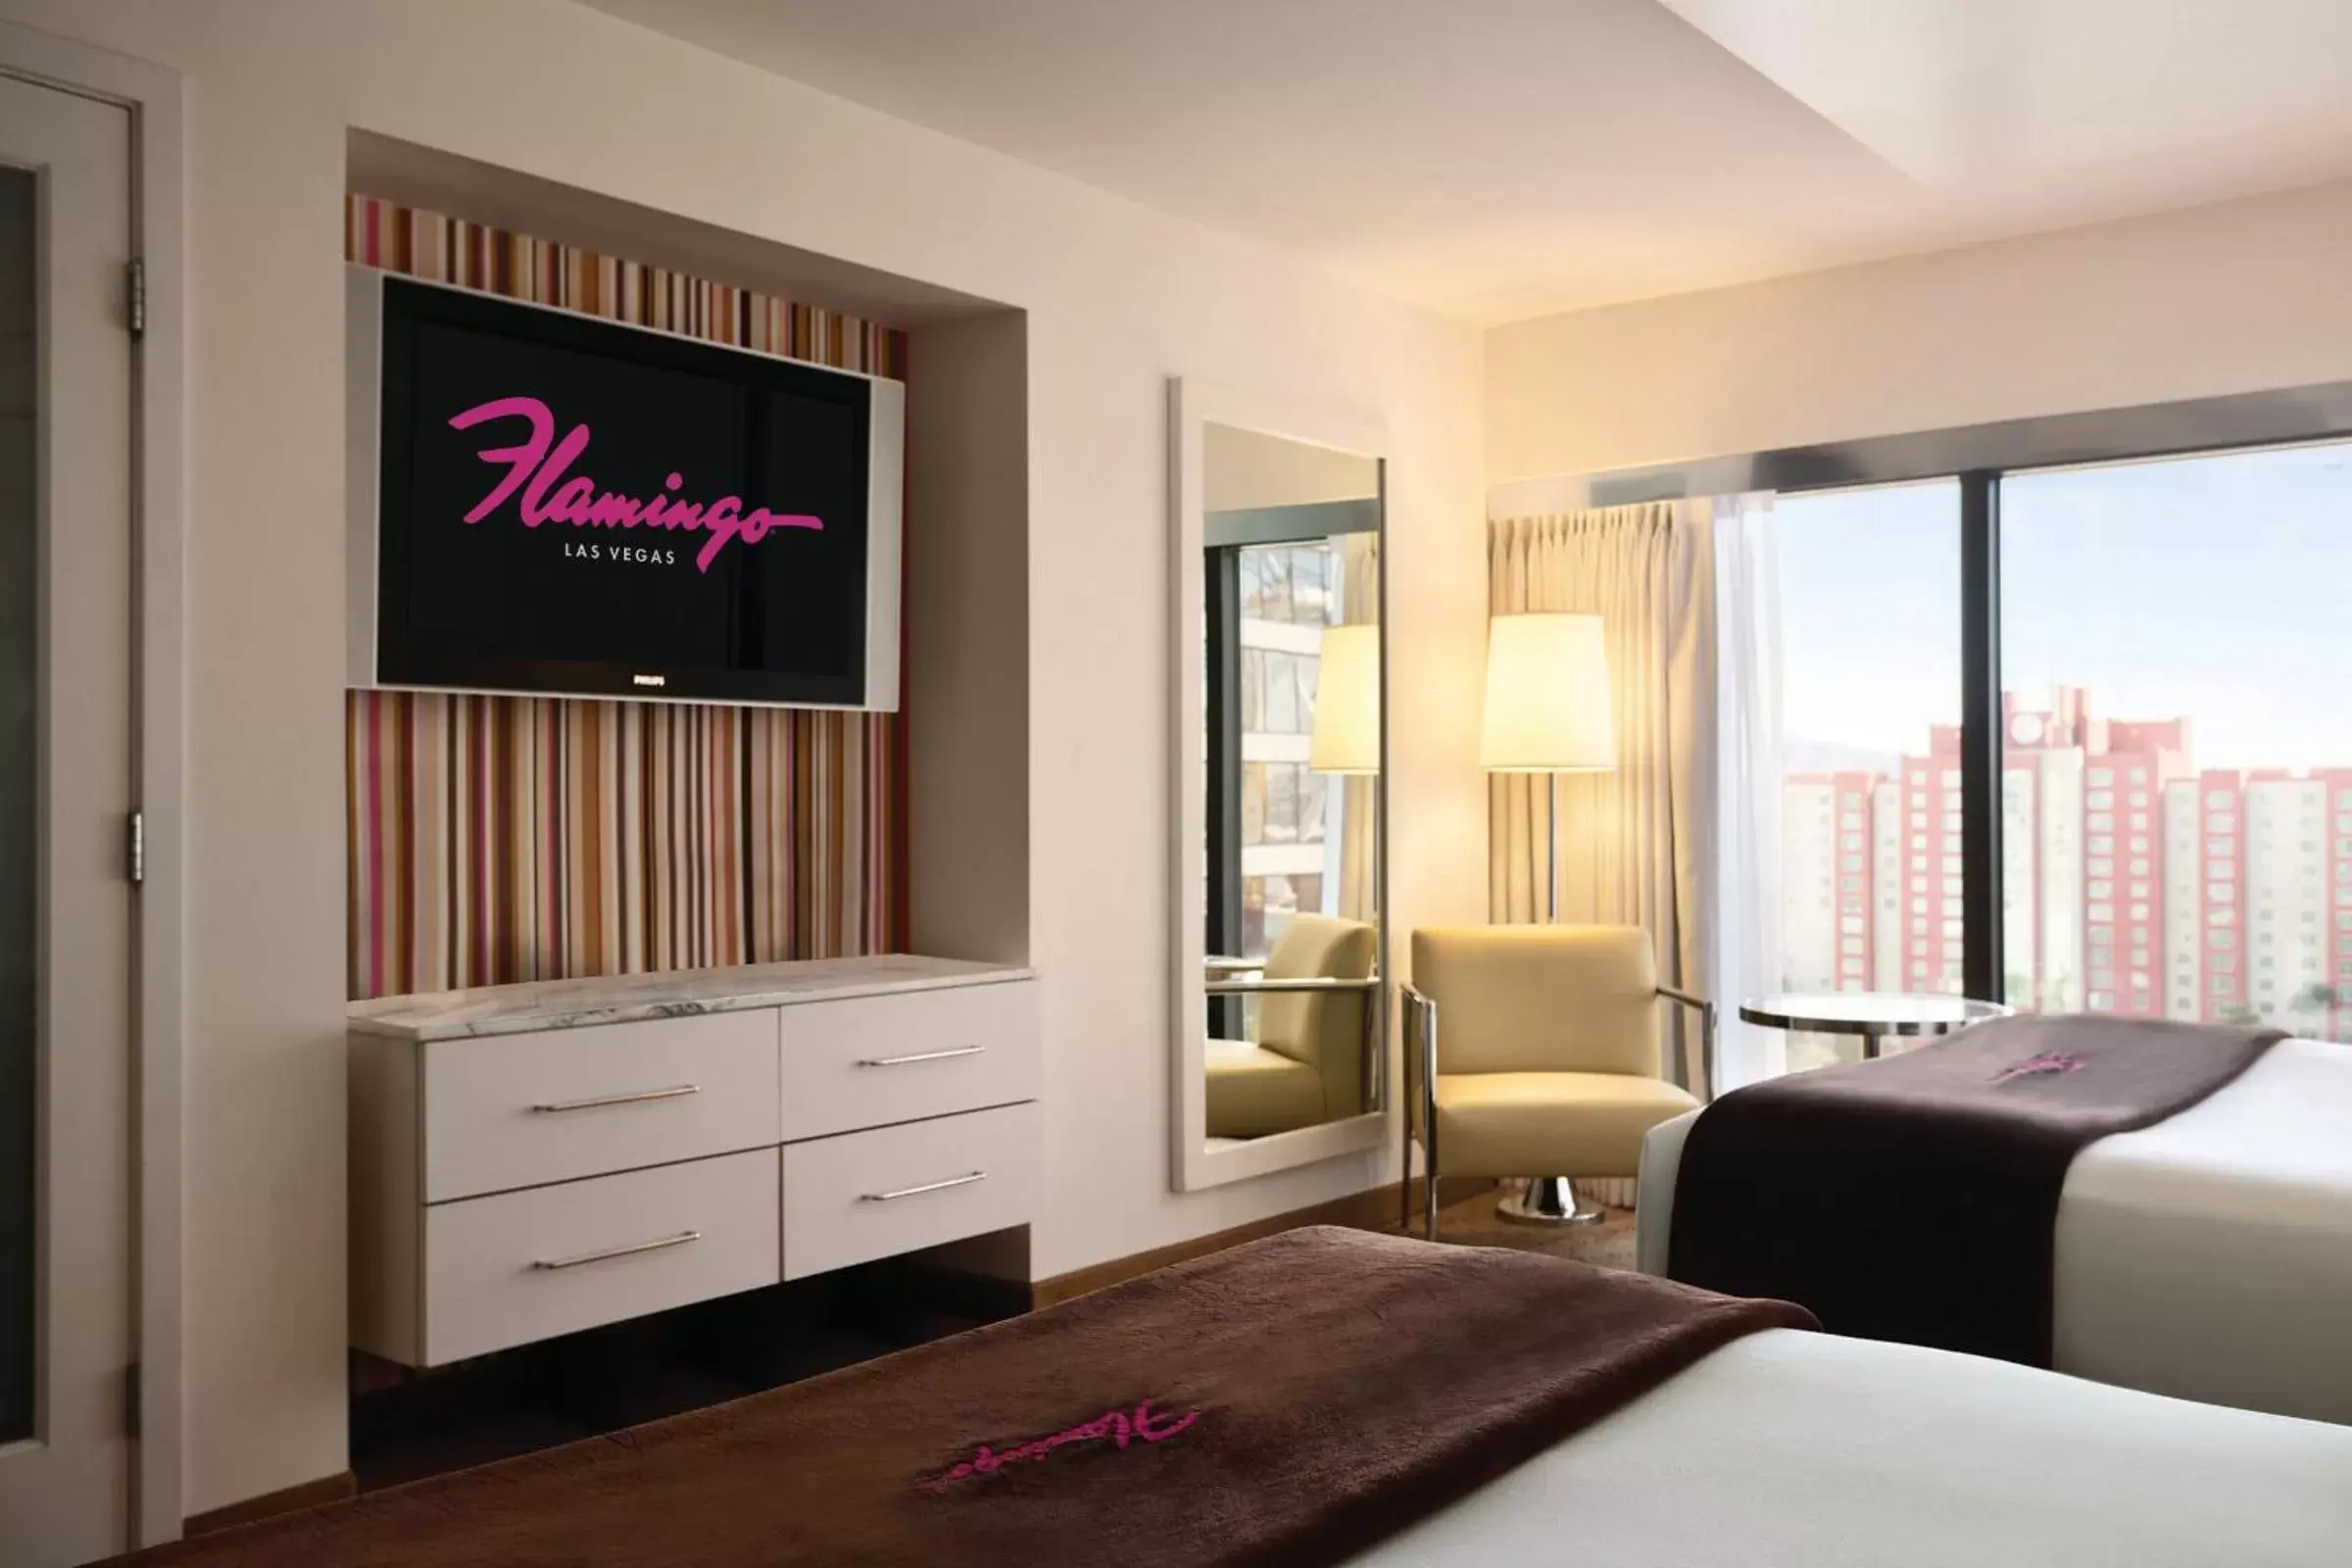 Bedroom, TV/Entertainment Center in Flamingo Las Vegas Hotel & Casino